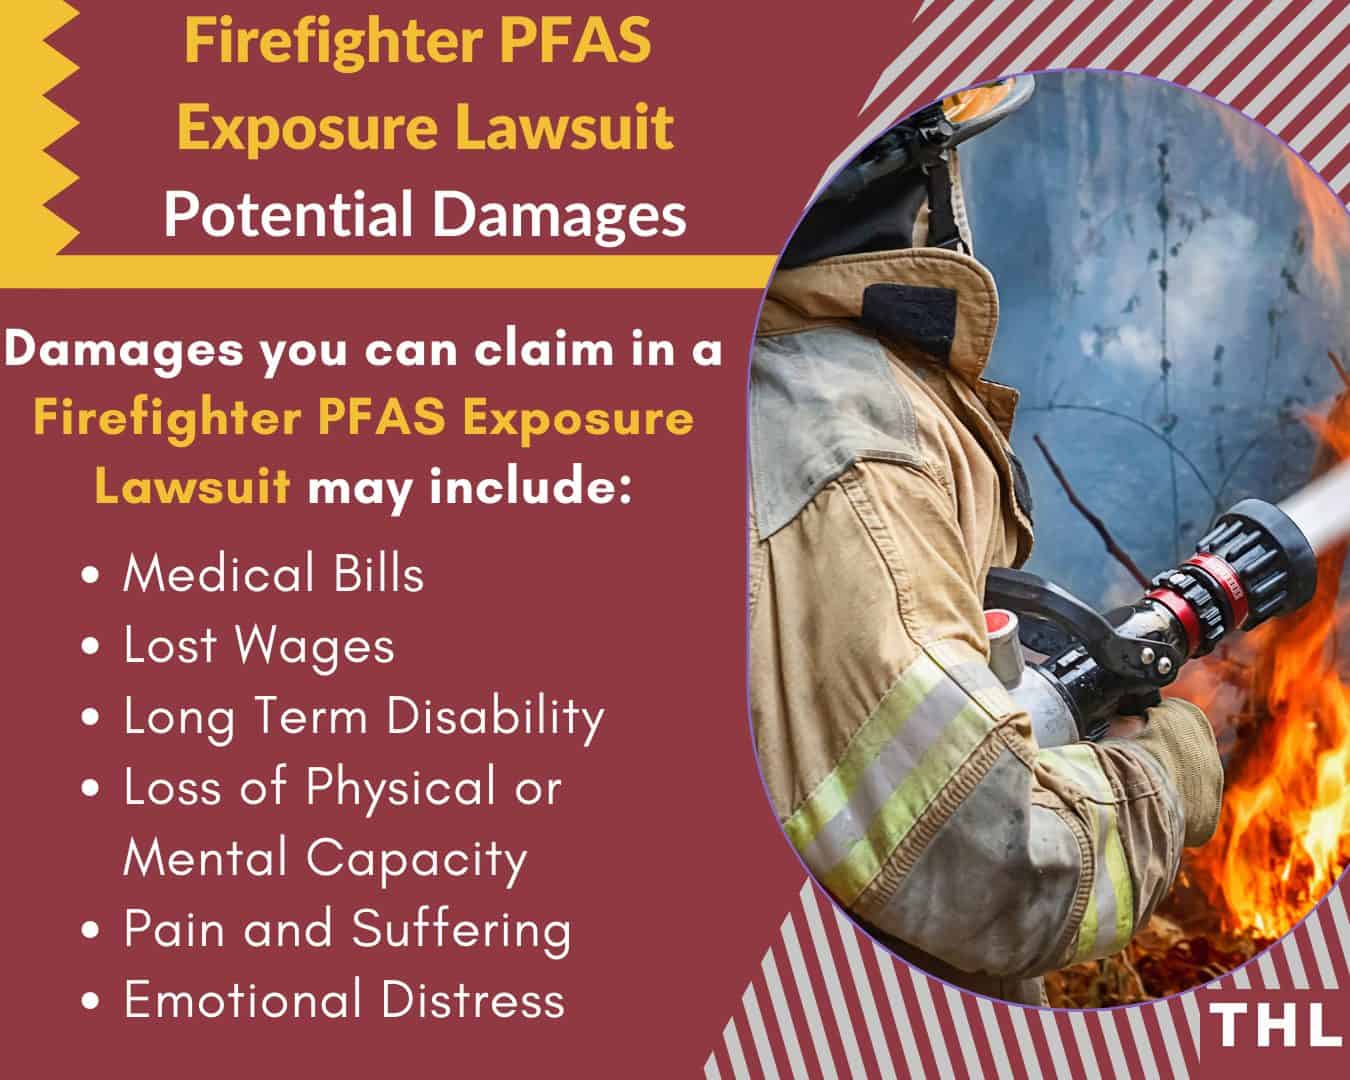 Firefighter PFAS Lawsuit, Firefighter PFAS Exposure Lawsuit, Firefighter PFAS Contamination Lawsuiit, Firefighter PFAS Exposure, Firefighter PFAS Contamination, Firefighter PFAS, Firefighter Equipment PFAS, Firefighter Gear PFAS, Firefighting Foam PFAS, Firefighter Turnout Gear PFAS Lawsuit, Firefighter Turnout Gear PFAS, Firefighter PFAS Litigation, Firefighter PFAS Lawsuit Damages, Damages for PFAS Lawsuit